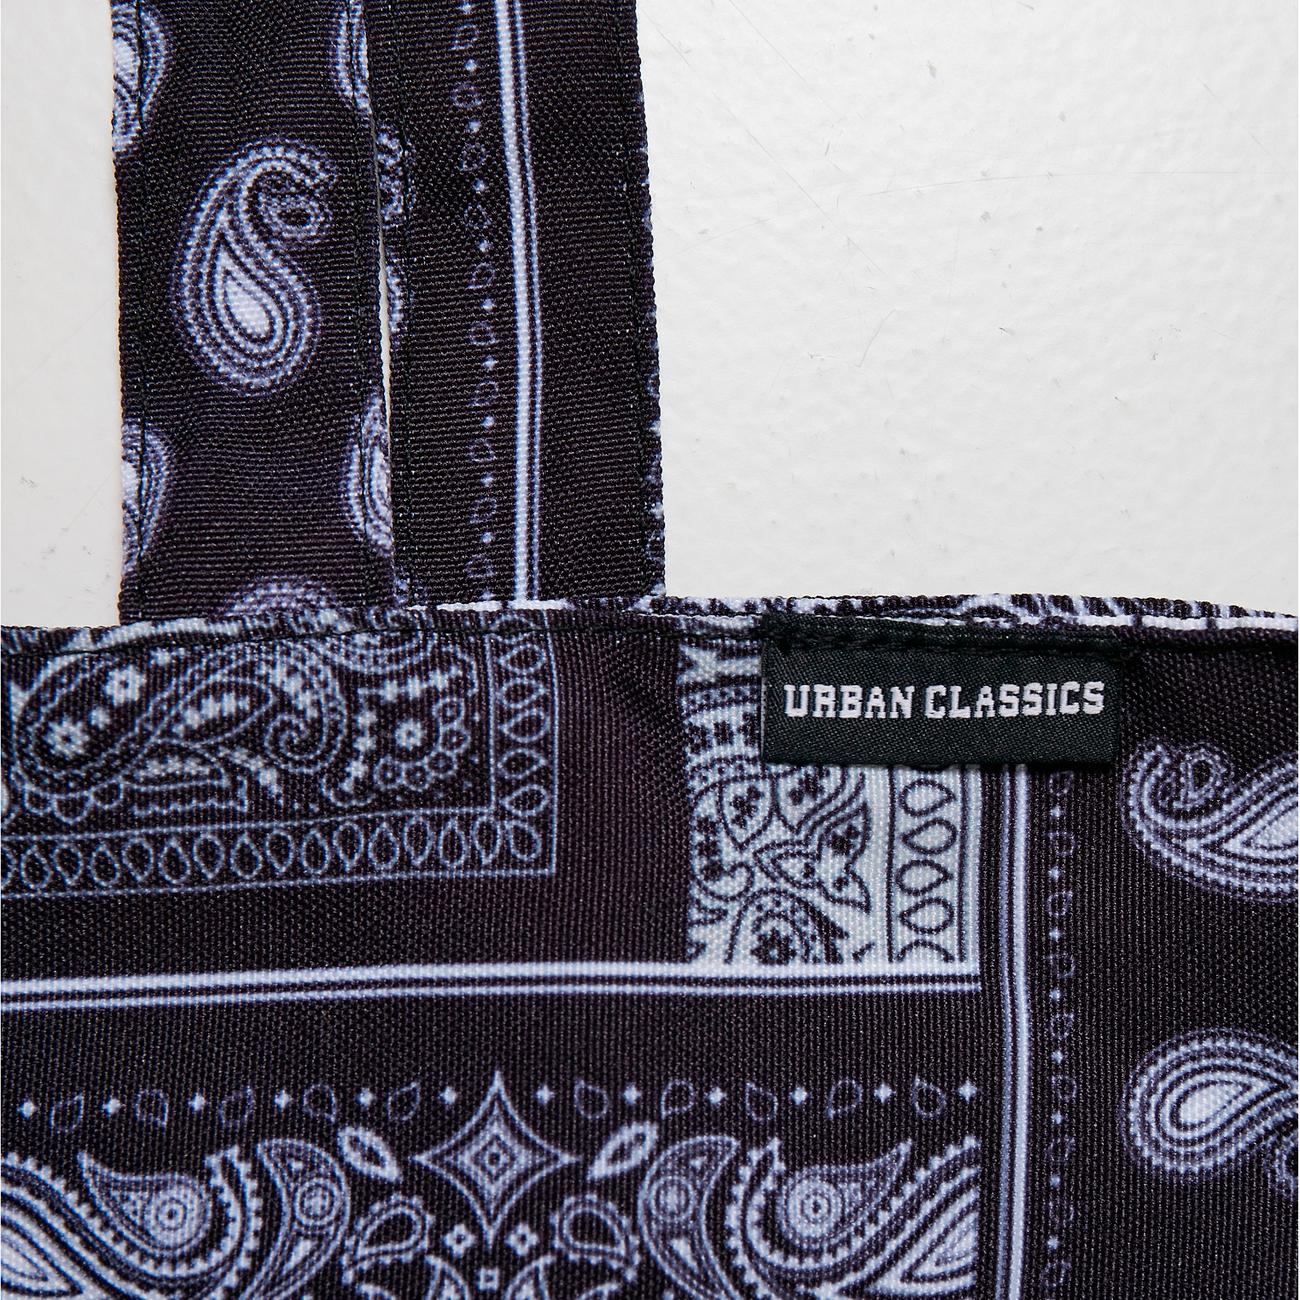 Urban Classics Bandana Patchwork Print Tote Bag blk/wht